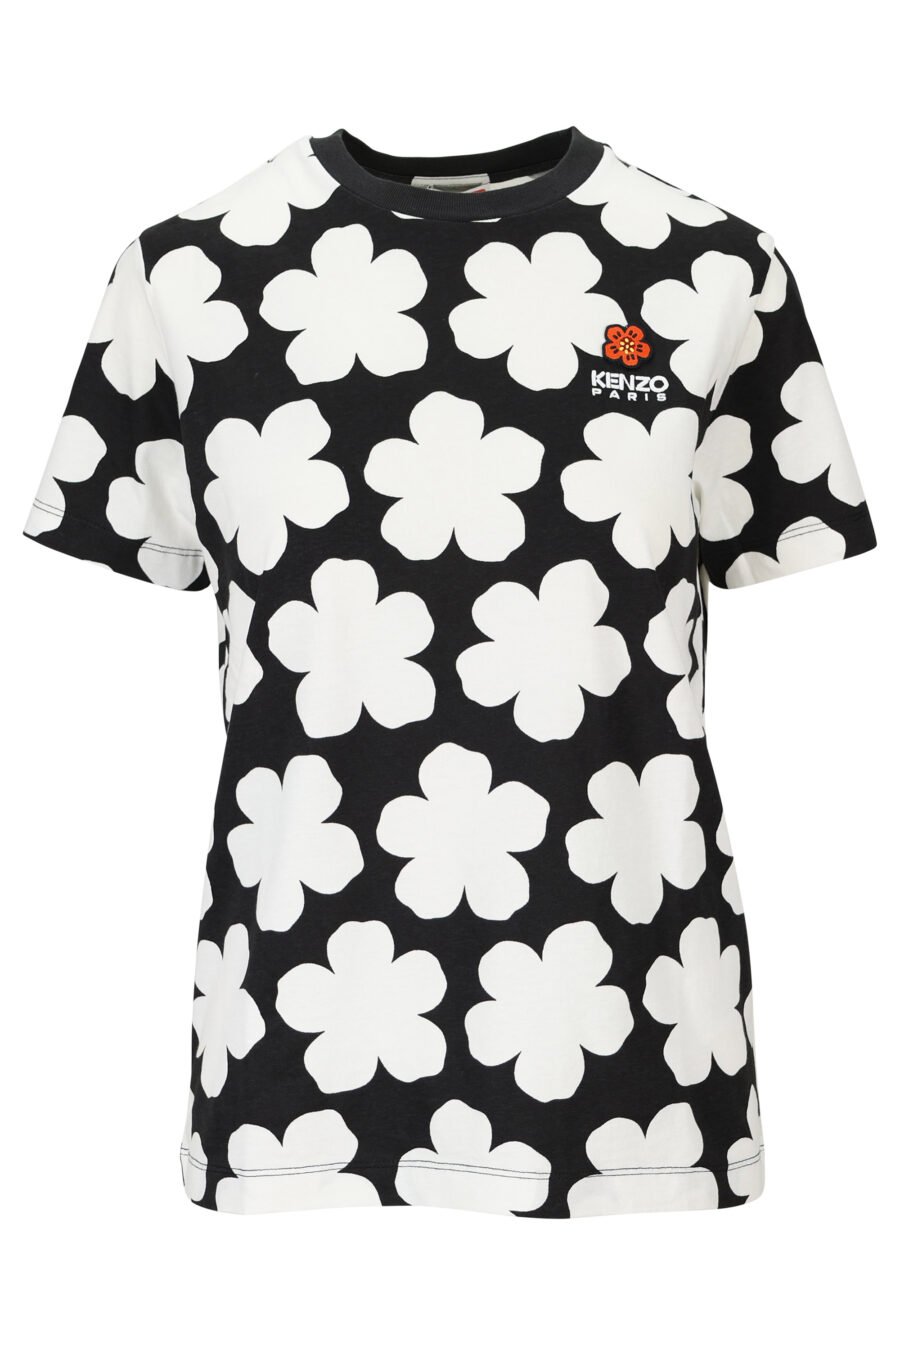 Camiseta negra "all over mini flower kenzo" - 3612230570757